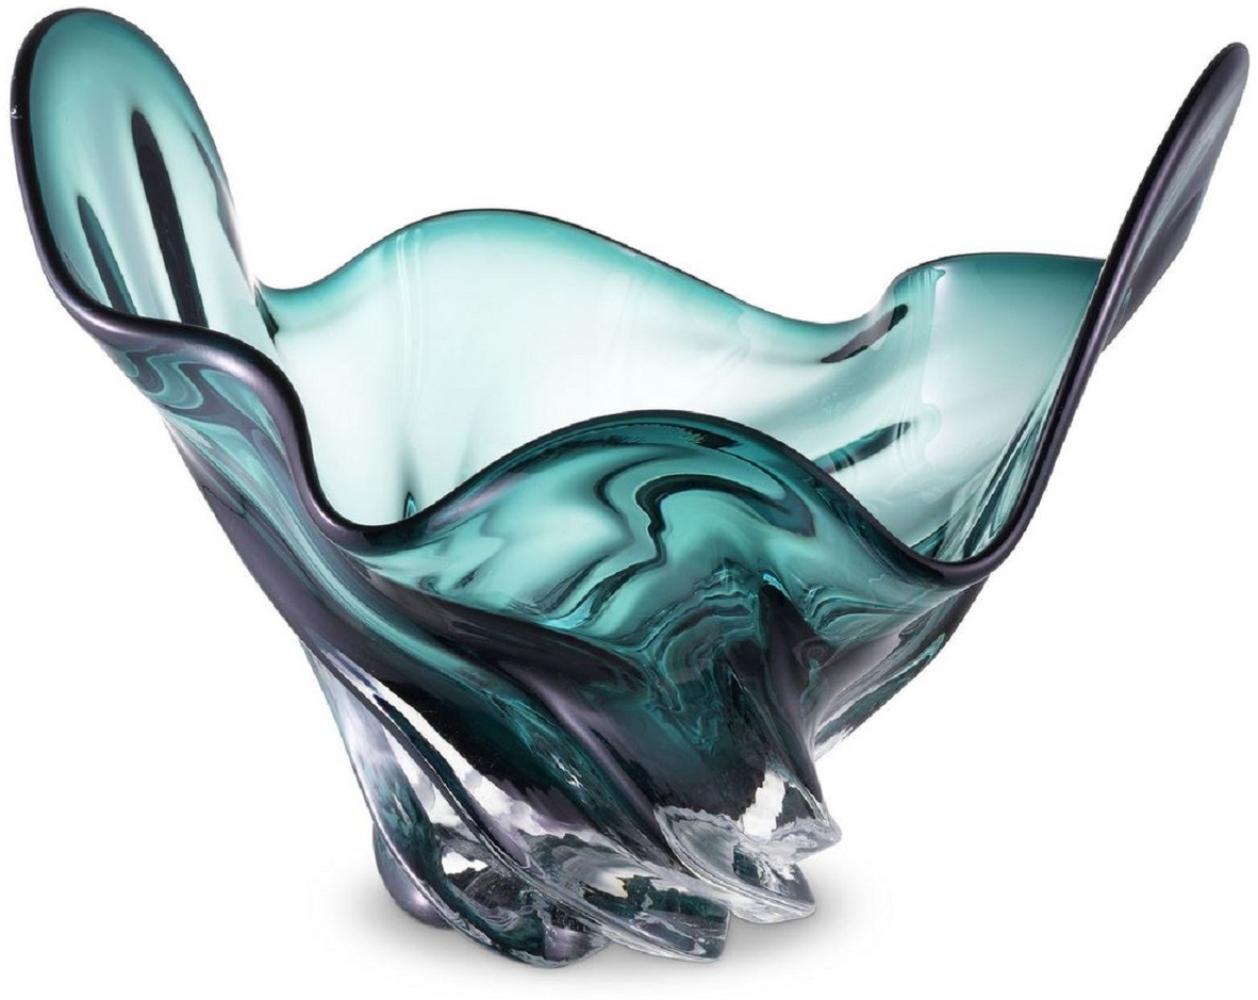 Casa Padrino Luxus Schüssel Grün 42 x 27 x H. 25 cm - Moderne Deko Schüssel aus mundgeblasenem Glas - Deko Accessoires - Luxus Qualität Bild 1